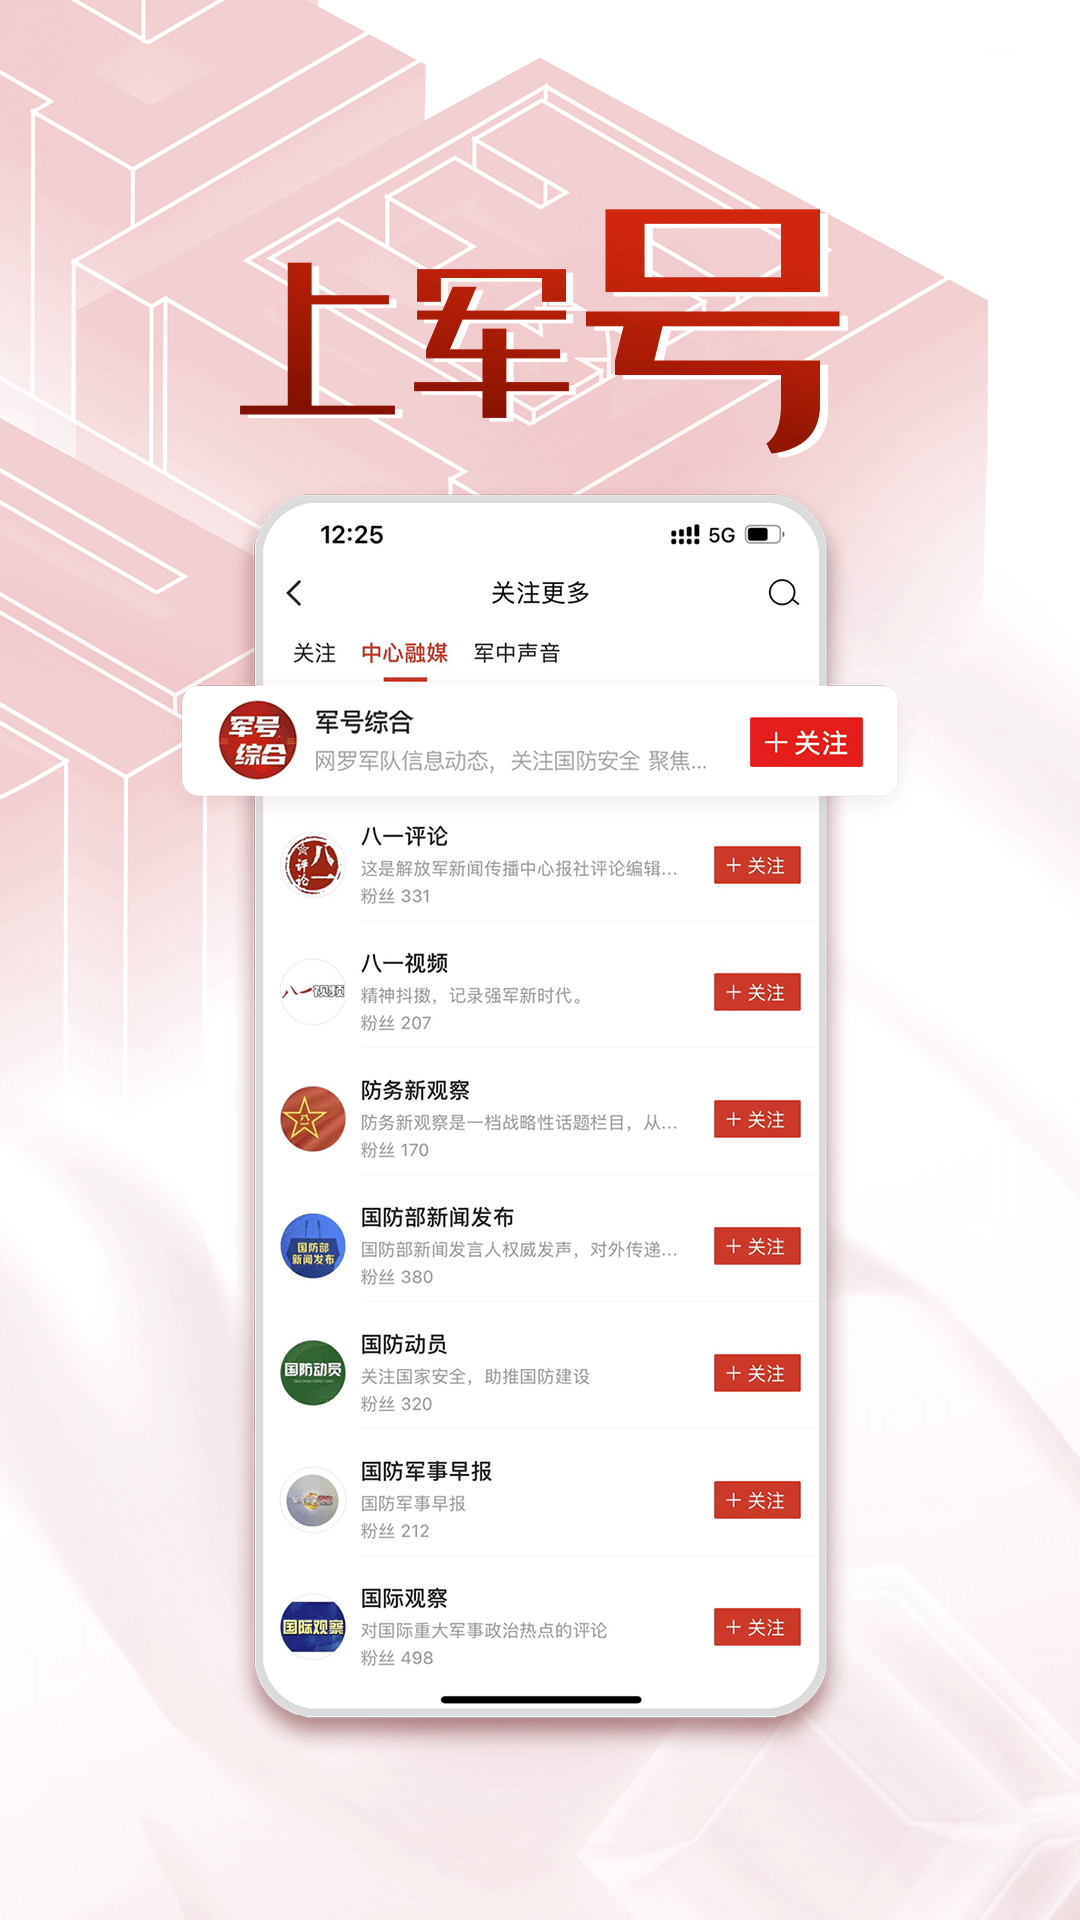 中国军号app下载,中国军号新闻资讯app官方版 v0.9.221